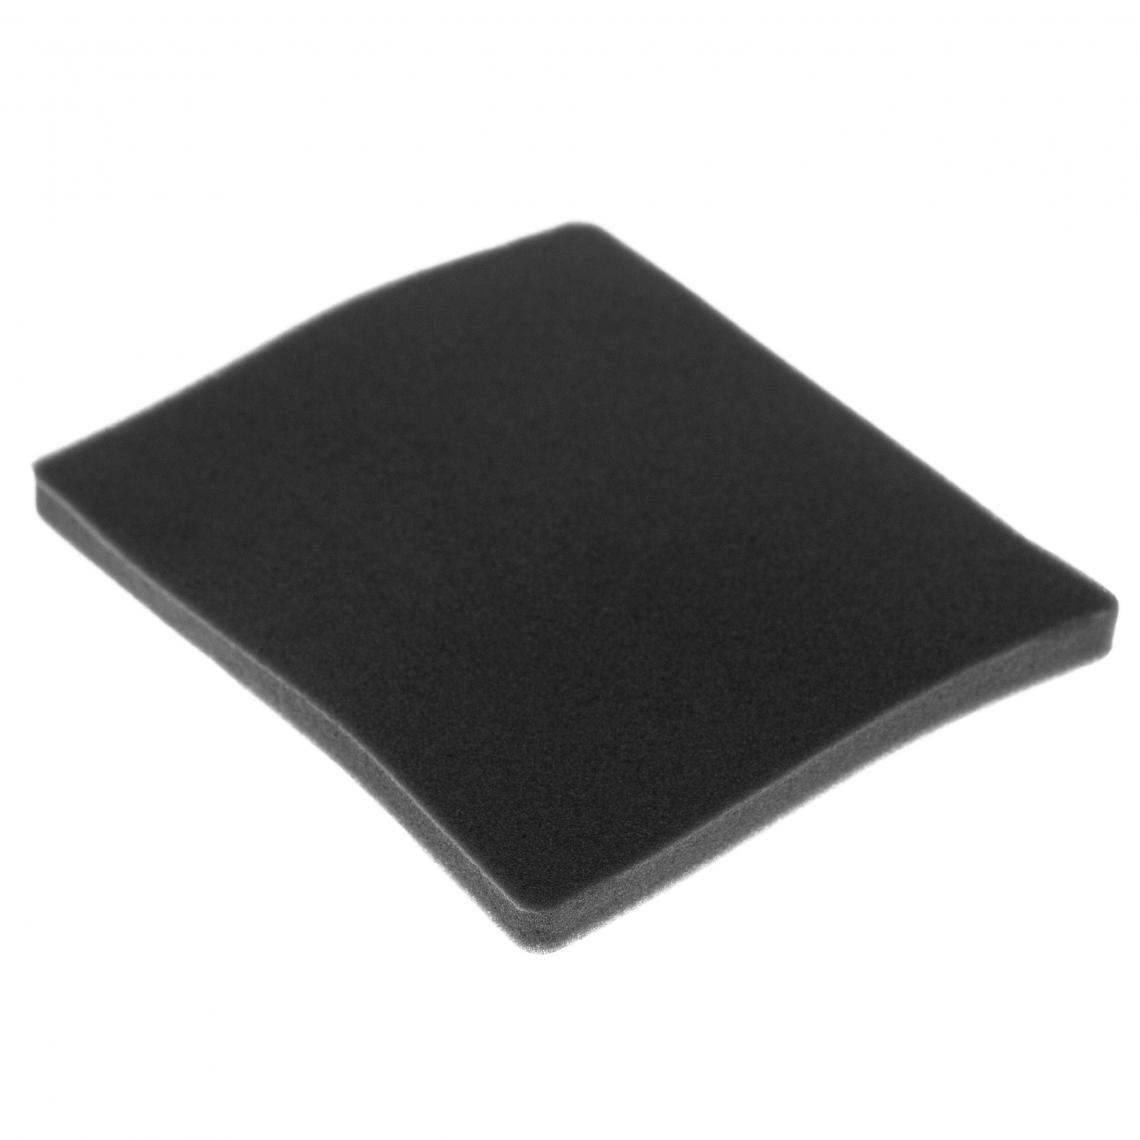 Vhbw - vhbw Filtre compatible avec Electrolux ZAC6842 (910288337) aspirateur - filtre de sortie d'air (filtre éponge), noir - Accessoire entretien des sols